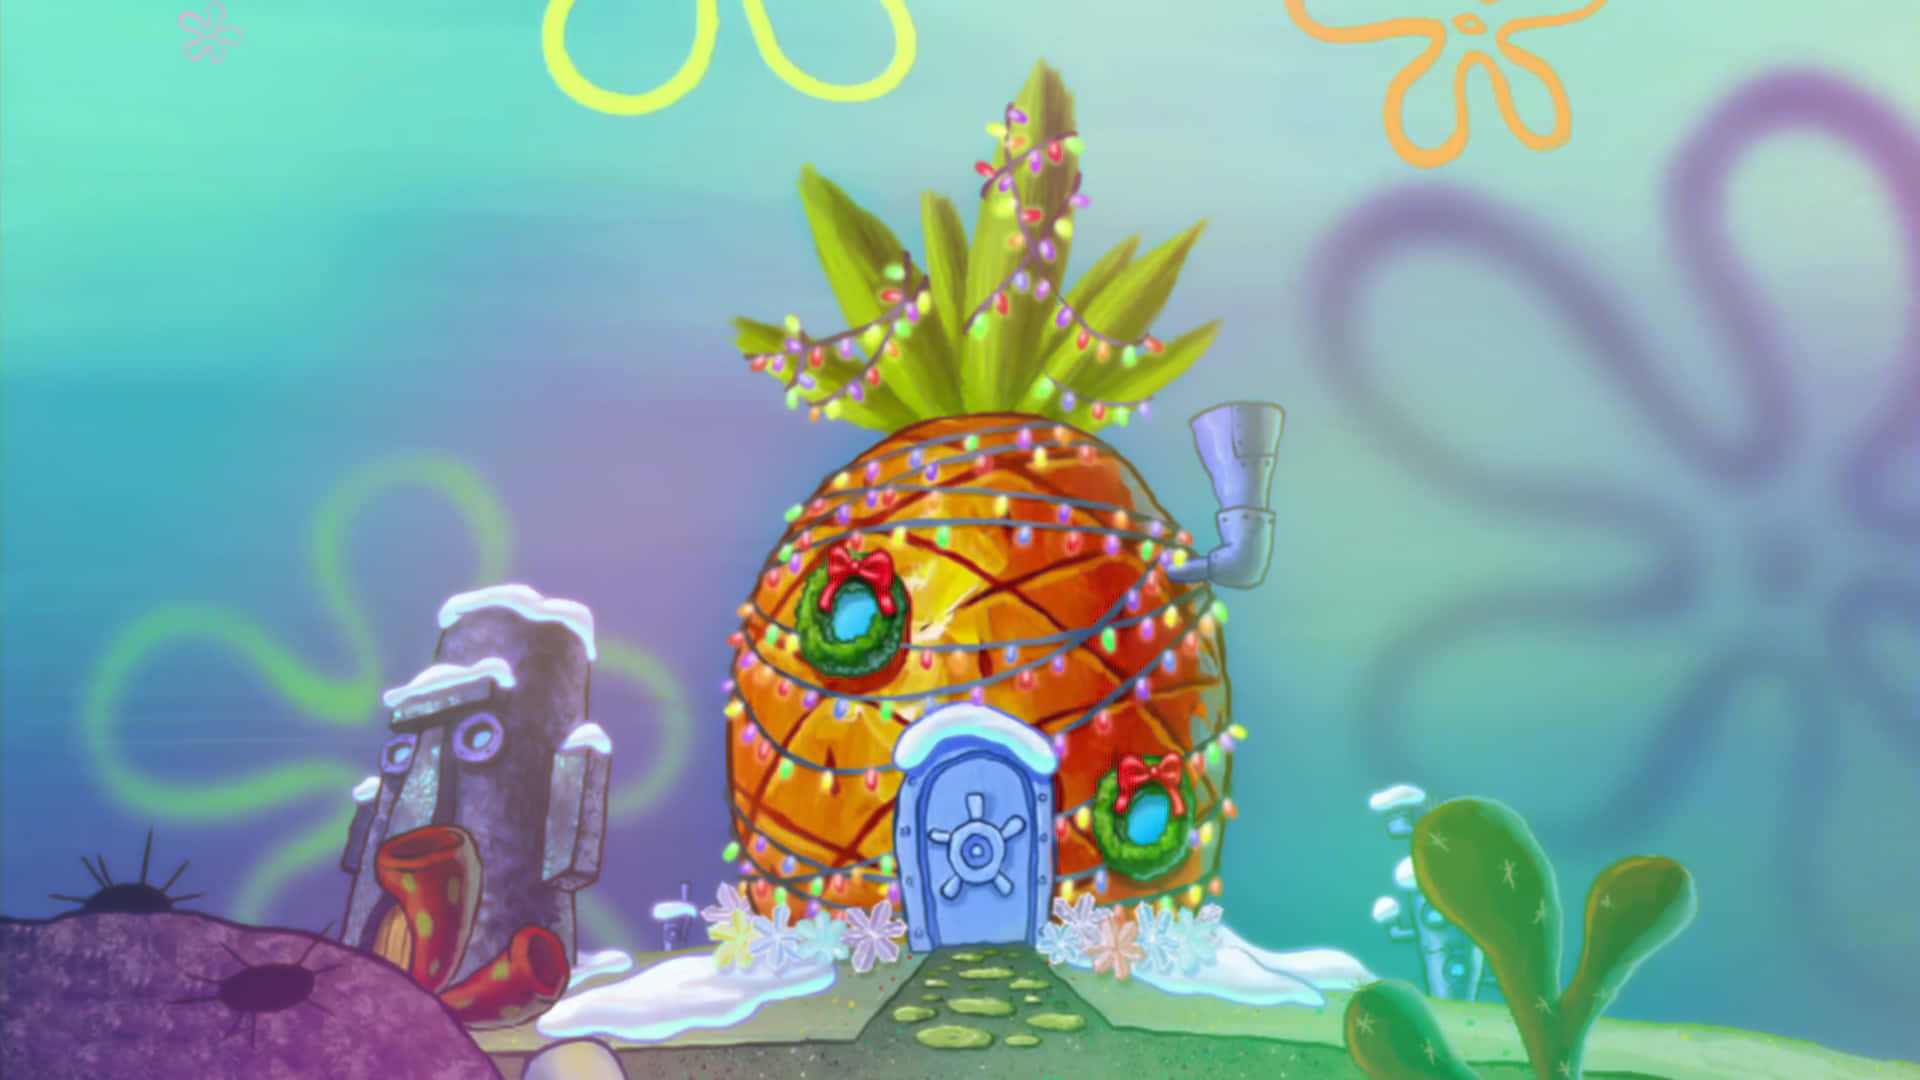 Take a look inside Spongebob's pineapple home! Wallpaper